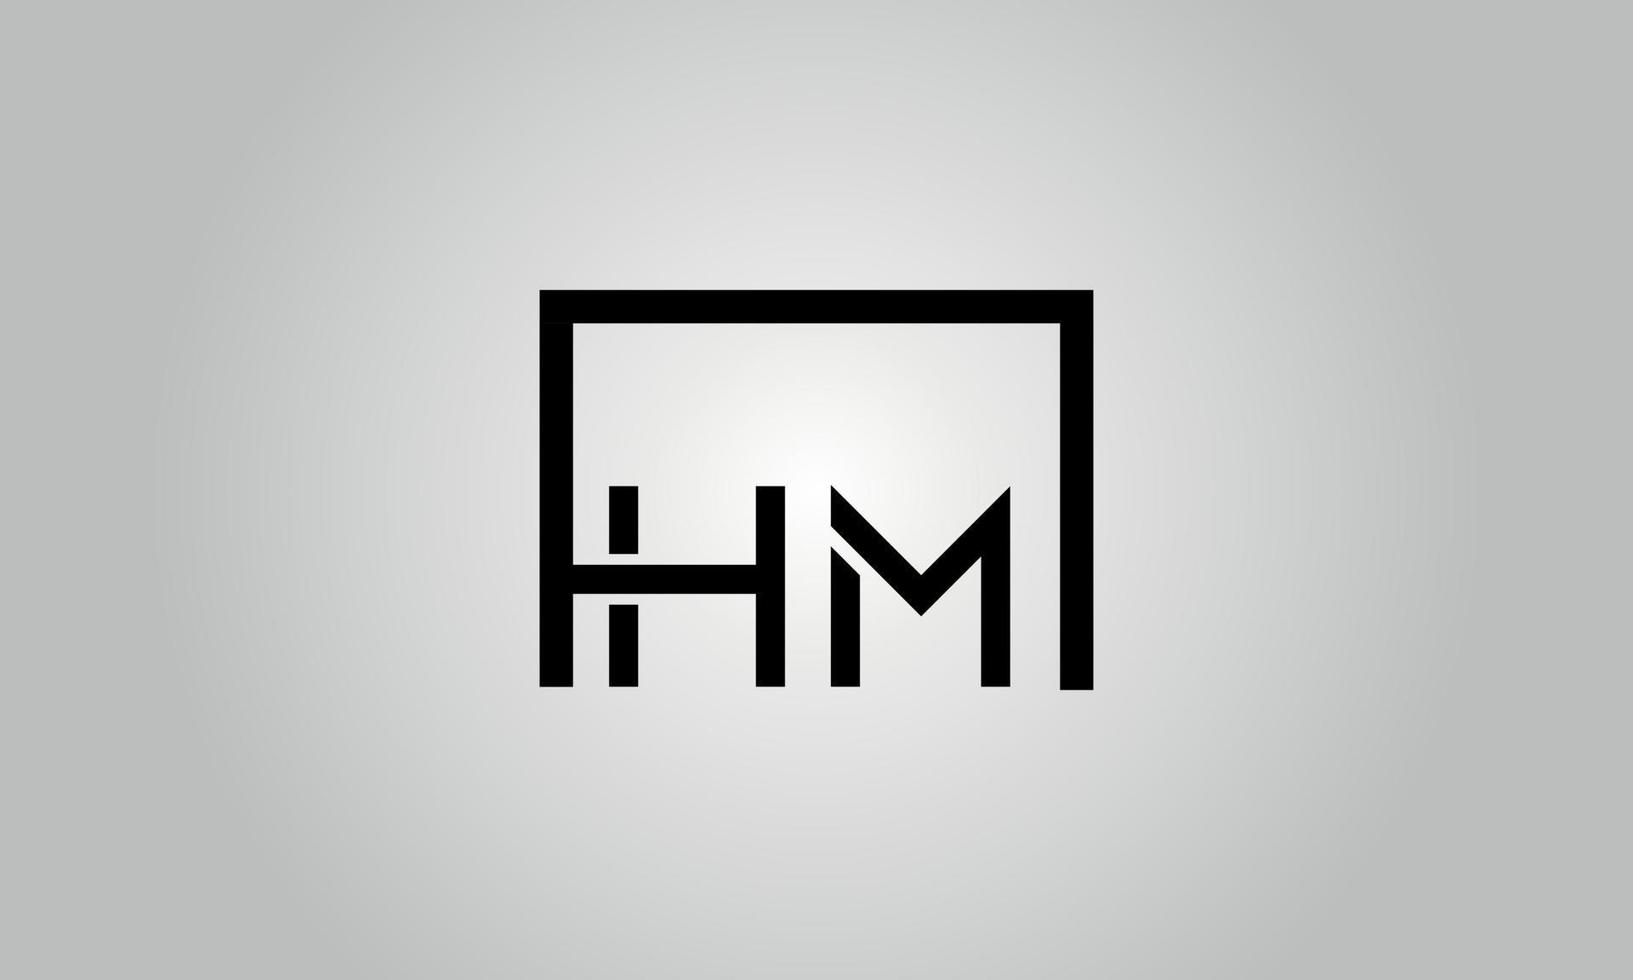 création de logo lettre hm. logo hm avec forme carrée dans le modèle vectoriel gratuit de couleurs noires.